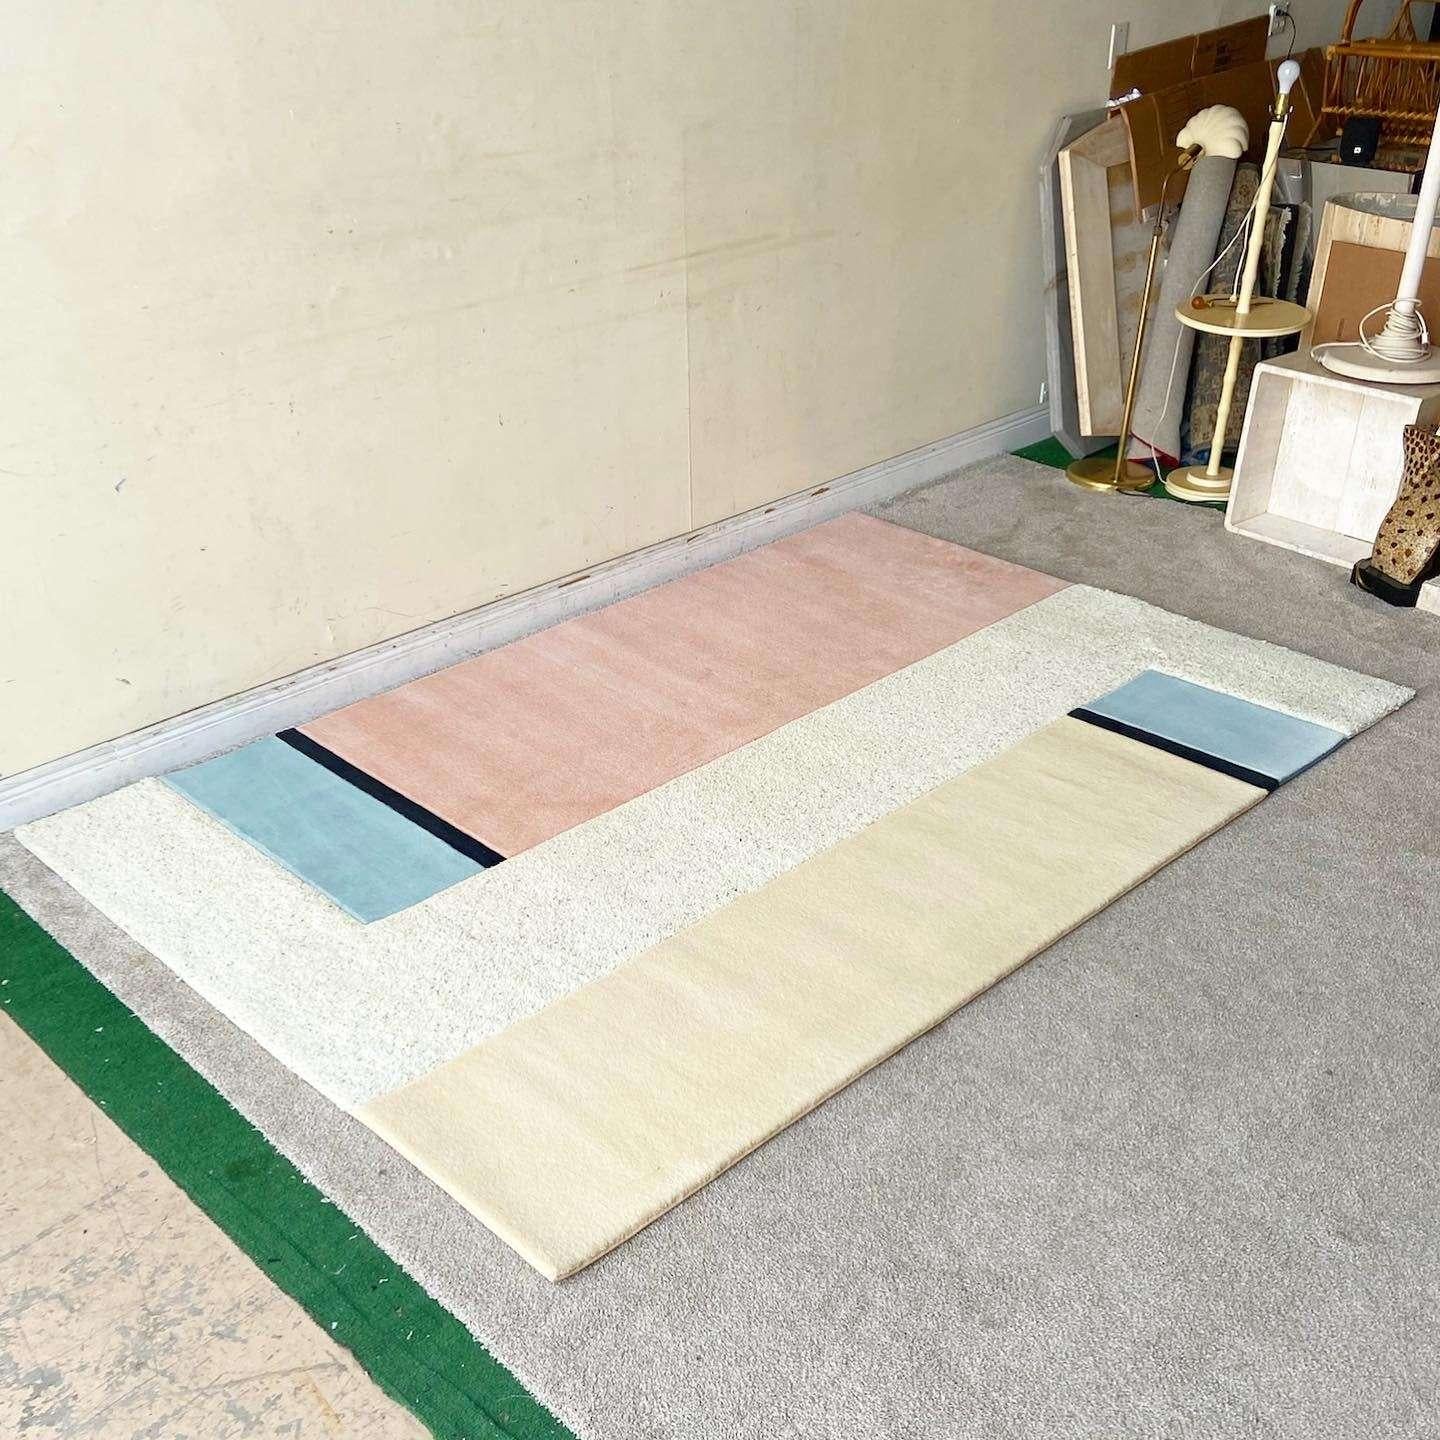 Erstaunlicher postmoderner rechteckiger Vorleger im Vintage-Stil. Der Teppich besteht aus beigen, rosafarbenen, blauen und schwarzen Rechtecken mit einer zotteligen beigen Mitte.

Vorleger 25
